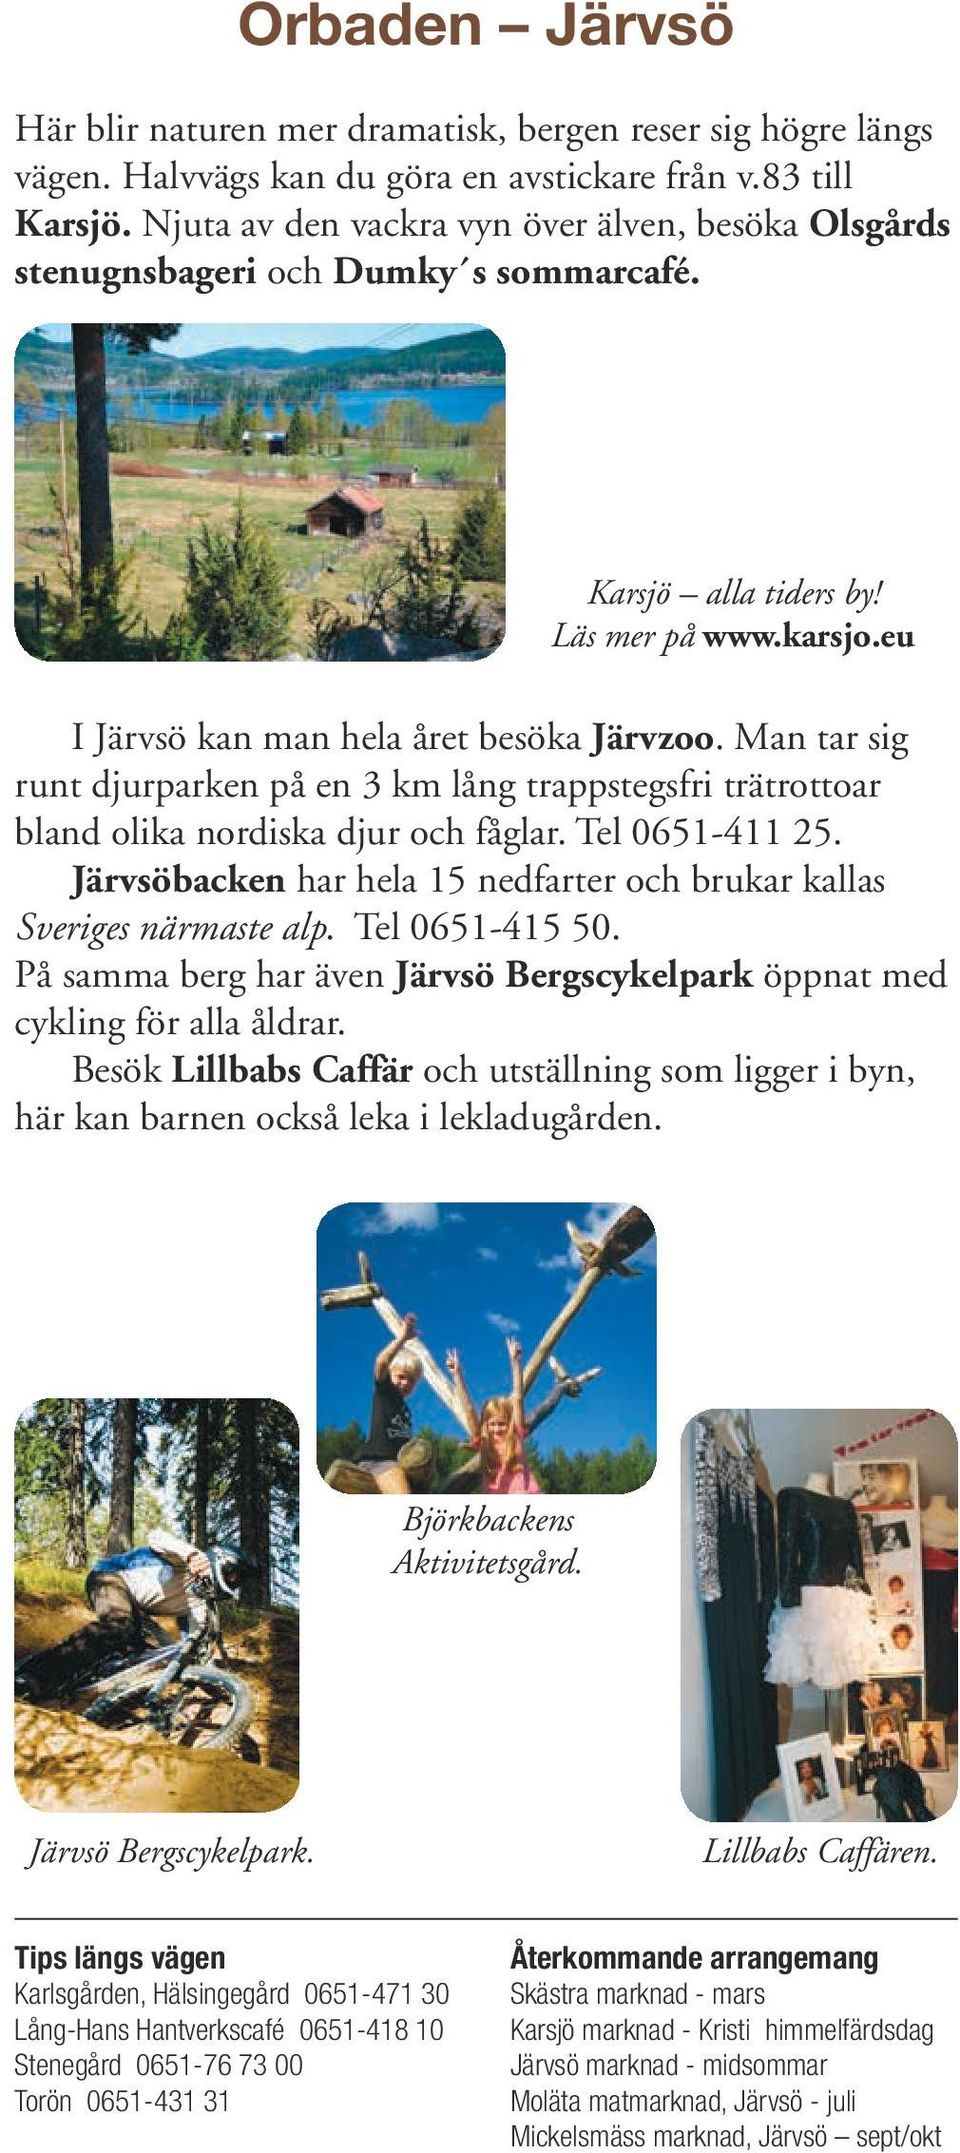 Man tar sig runt djurparken på en 3 km lång trappstegsfri trätrottoar bland olika nordiska djur och fåglar. Tel 0651-411 25. Järvsöbacken har hela 15 nedfarter och brukar kallas Sveriges närmaste alp.